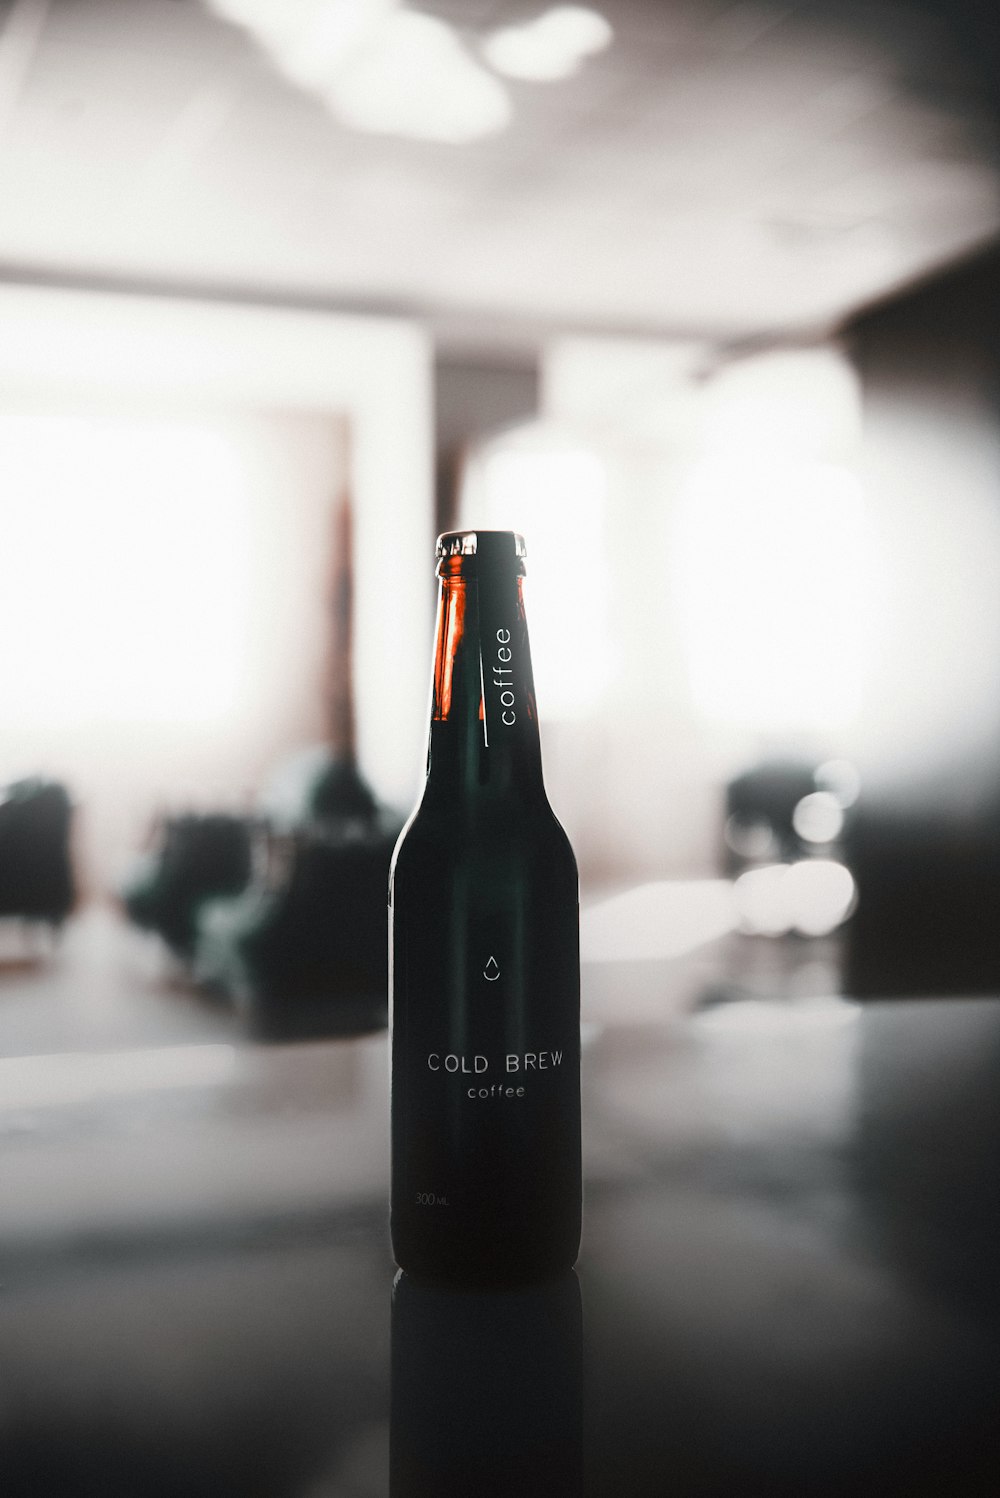 black glass bottle on table